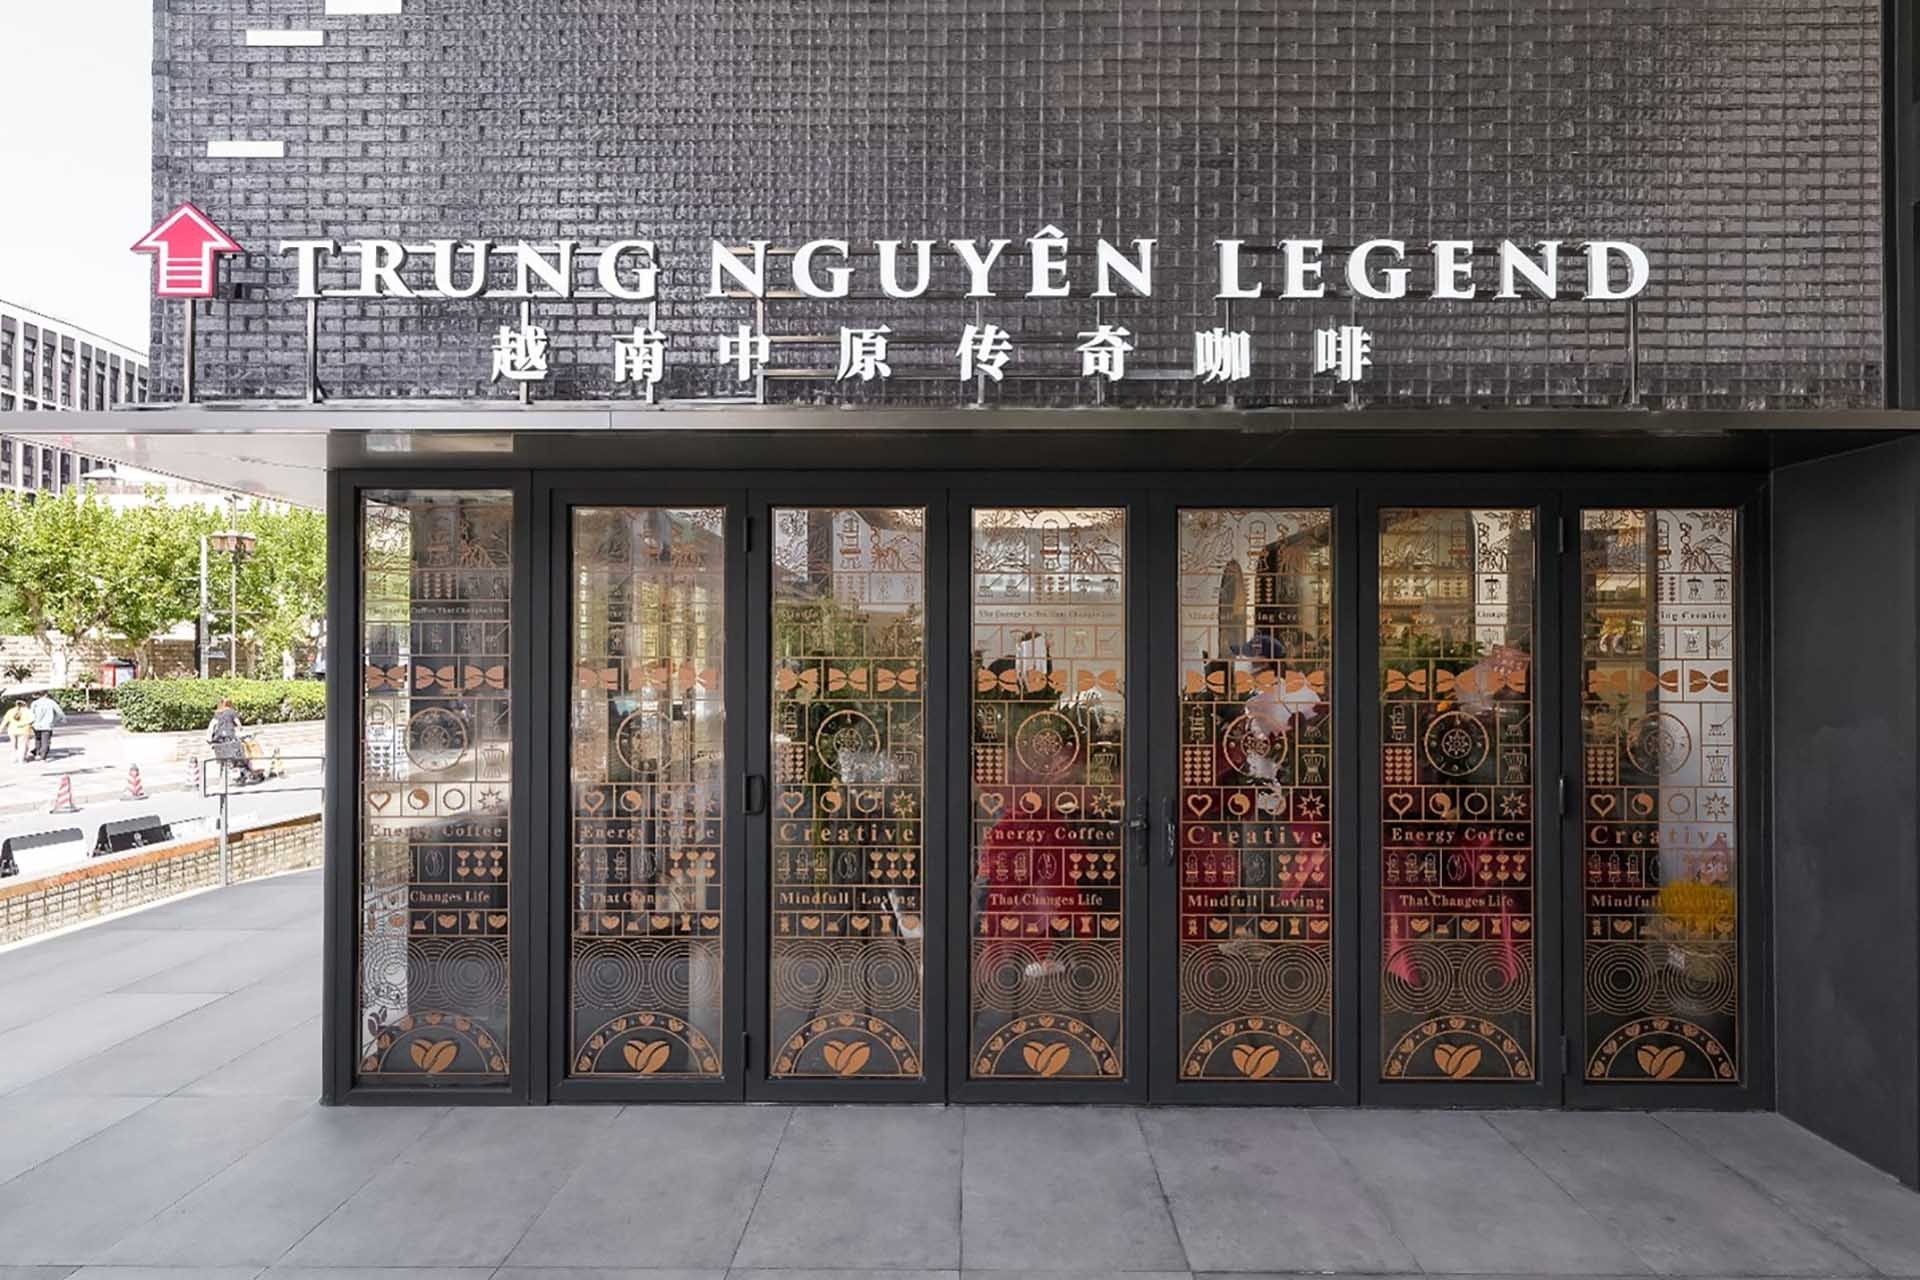 Mô hình Thế giới cà phê Trung Nguyên Legend đã khai trương không gian đầu tiên trên thế giới tại khu vực trung tâm thành phố Thượng Hải, Trung Quốc. 